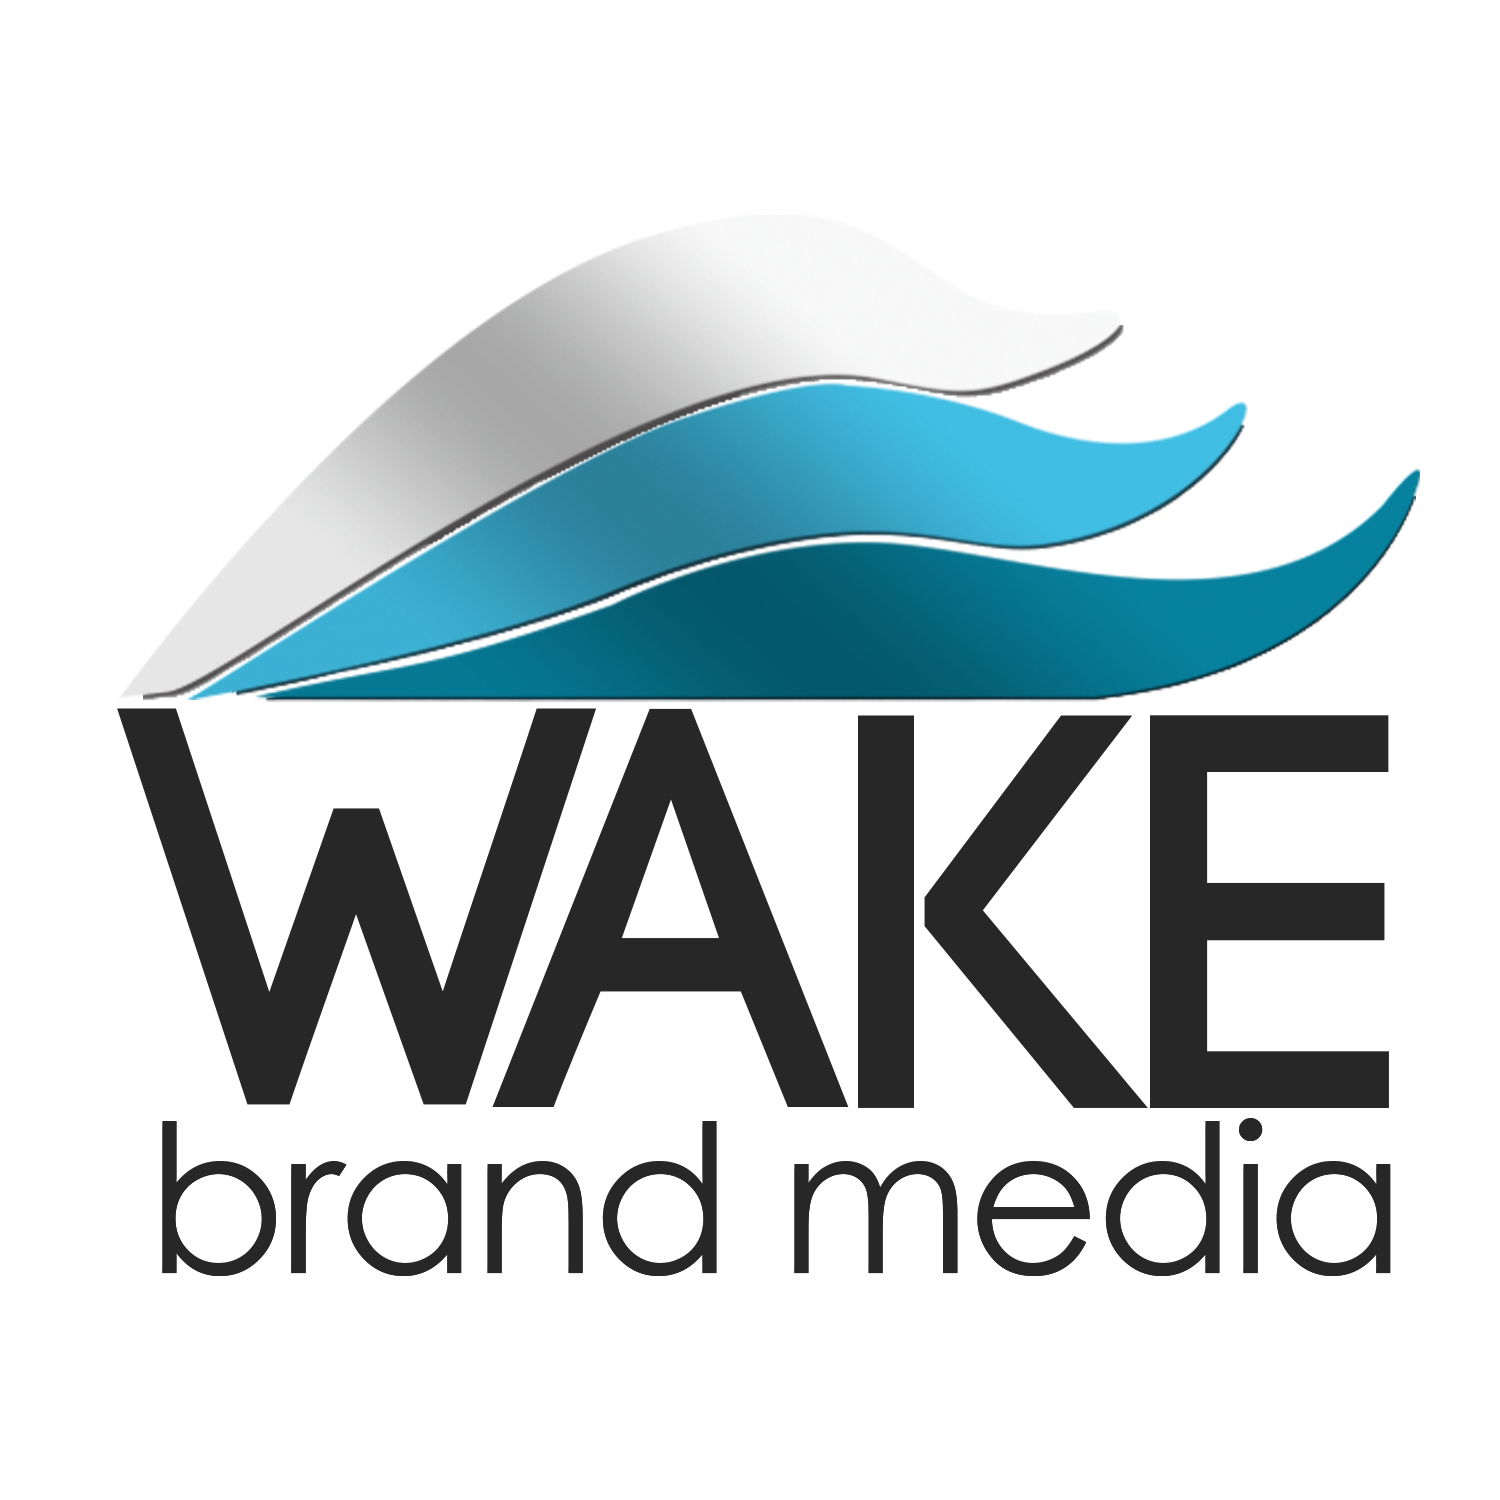 WAKE brand media